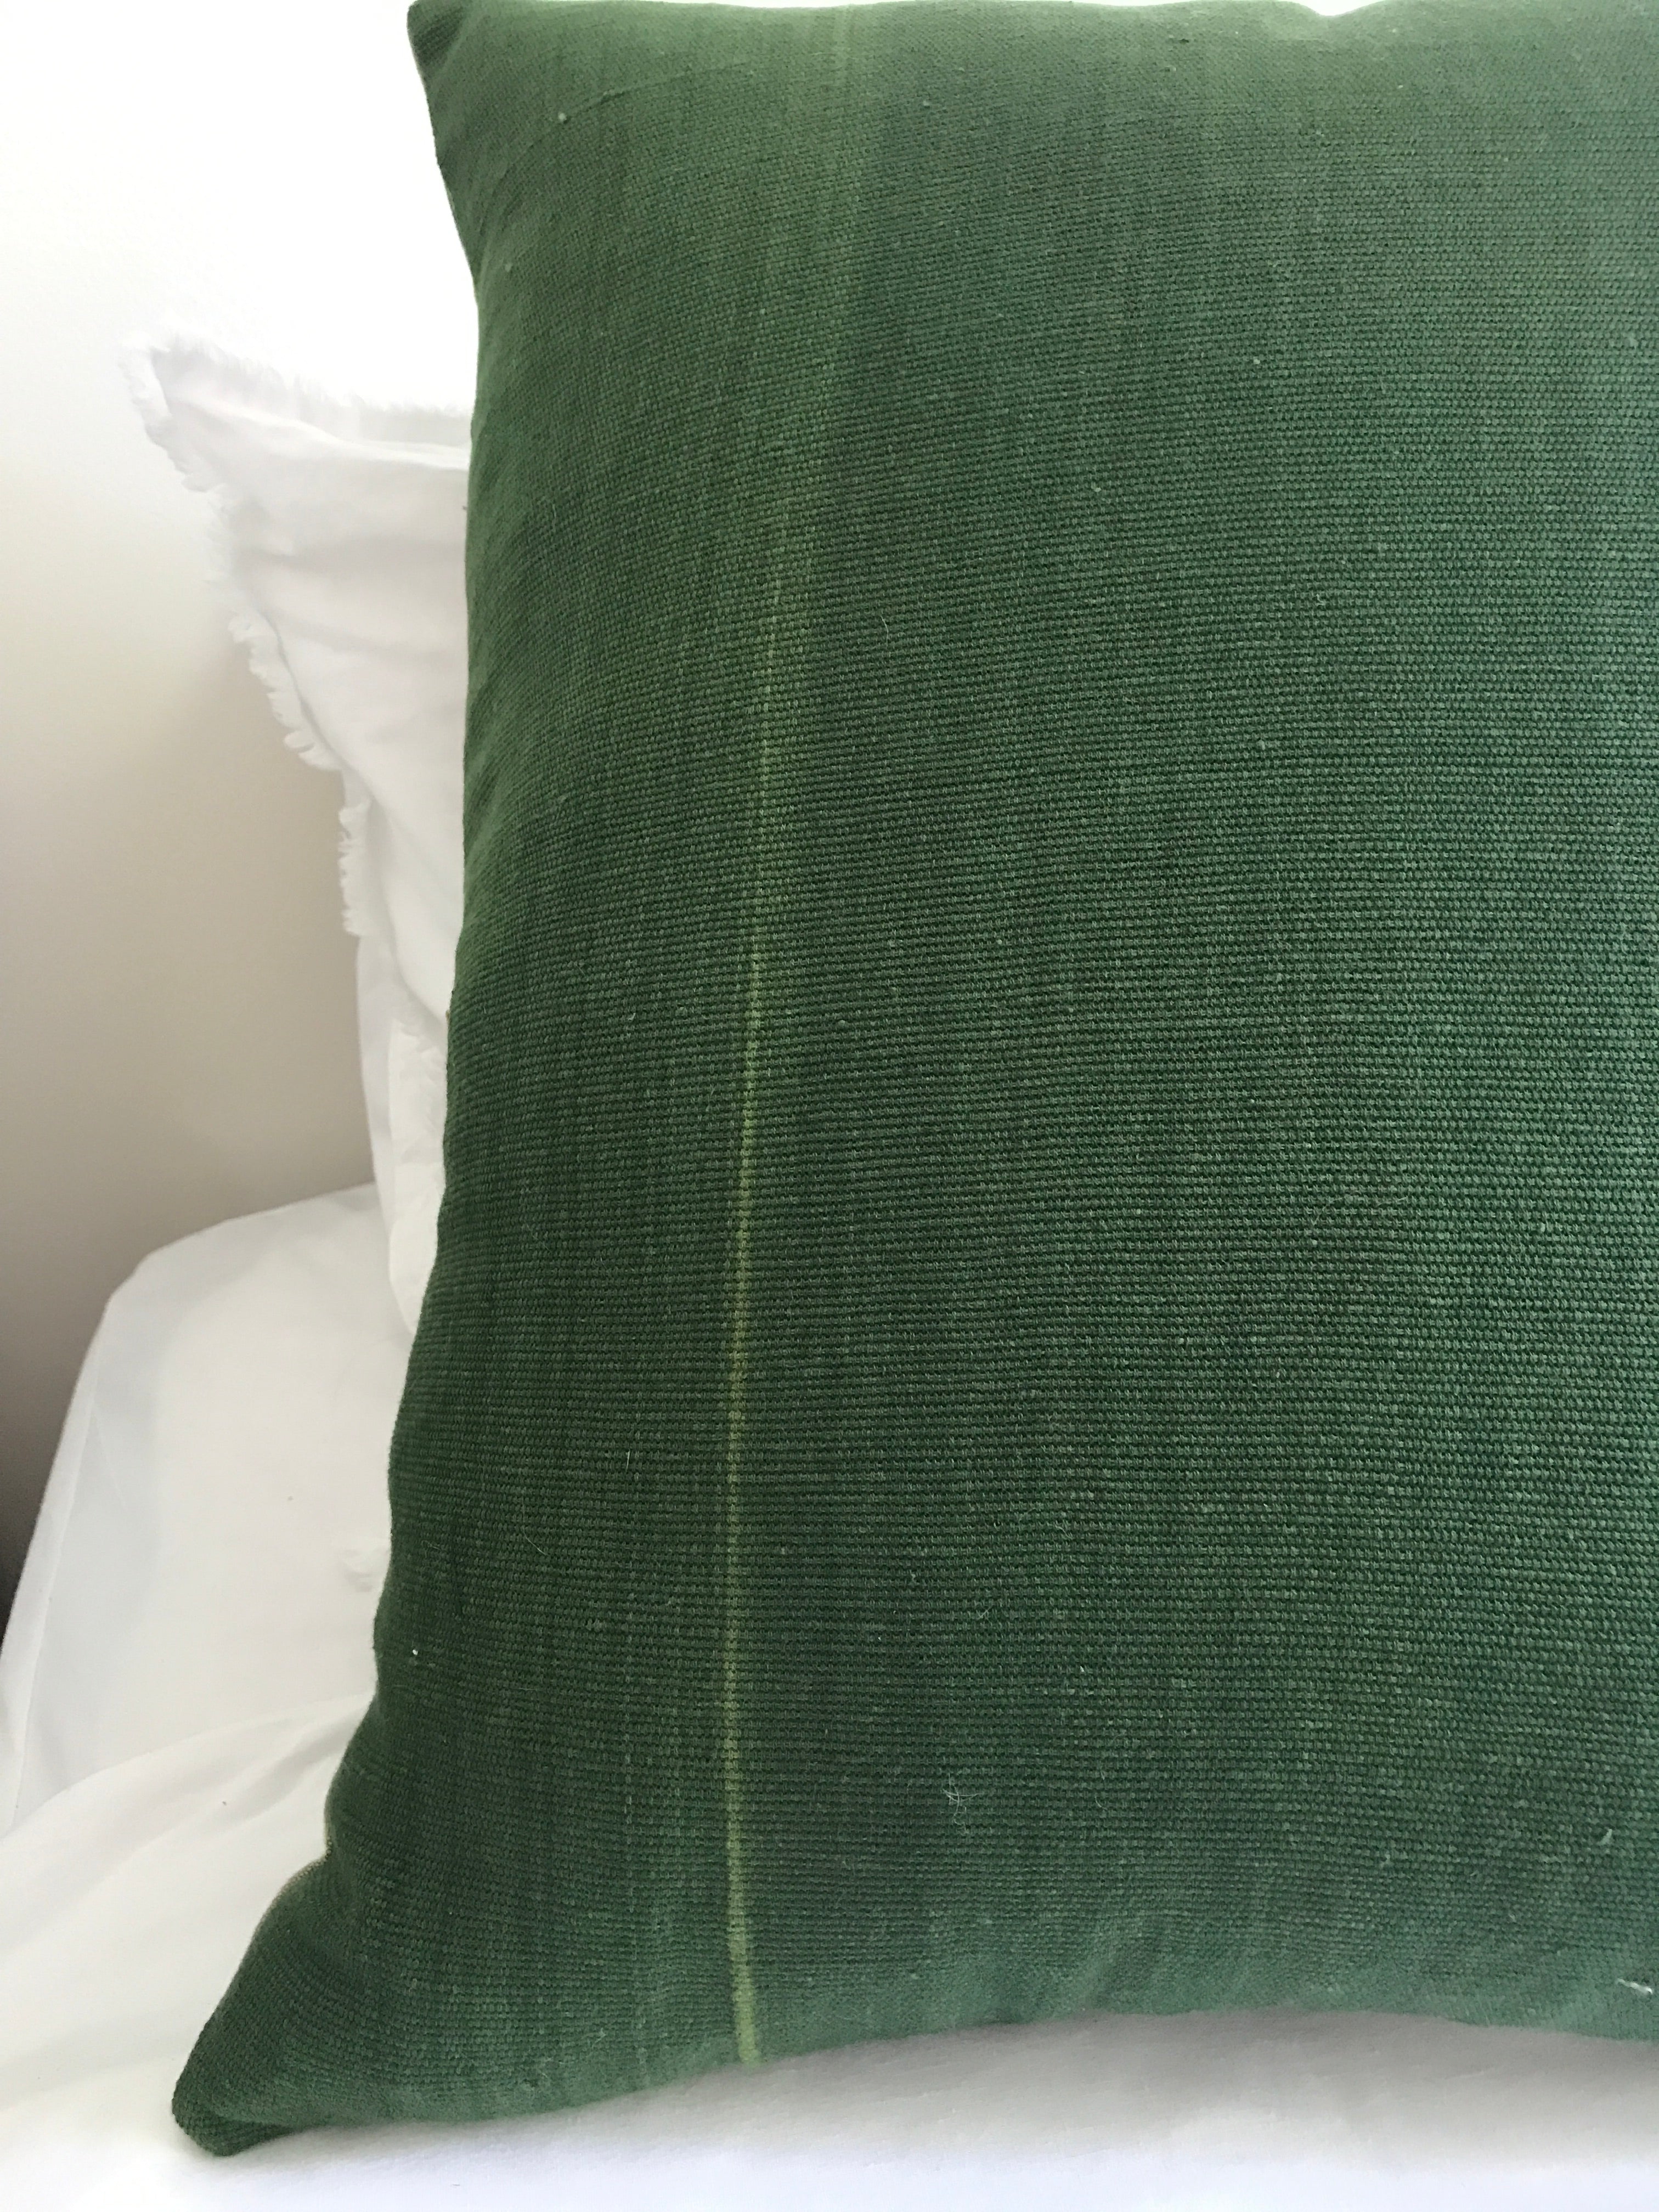 Quetzal - Ikat Throw Pillow